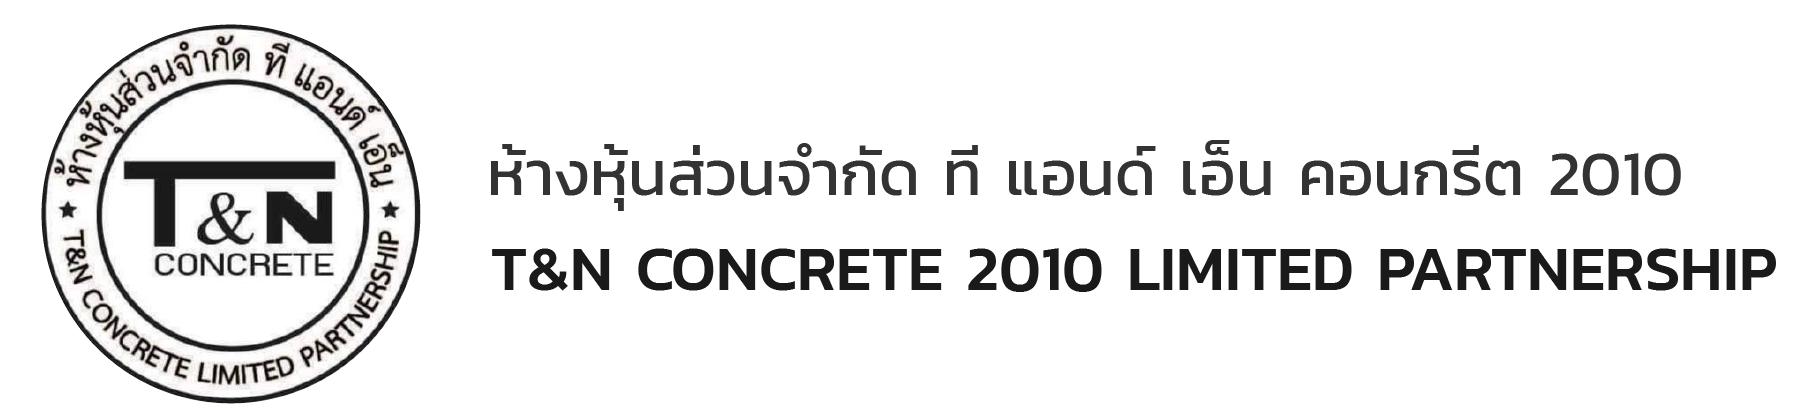 T&N CONCRETE 2010 LTD.,PART.